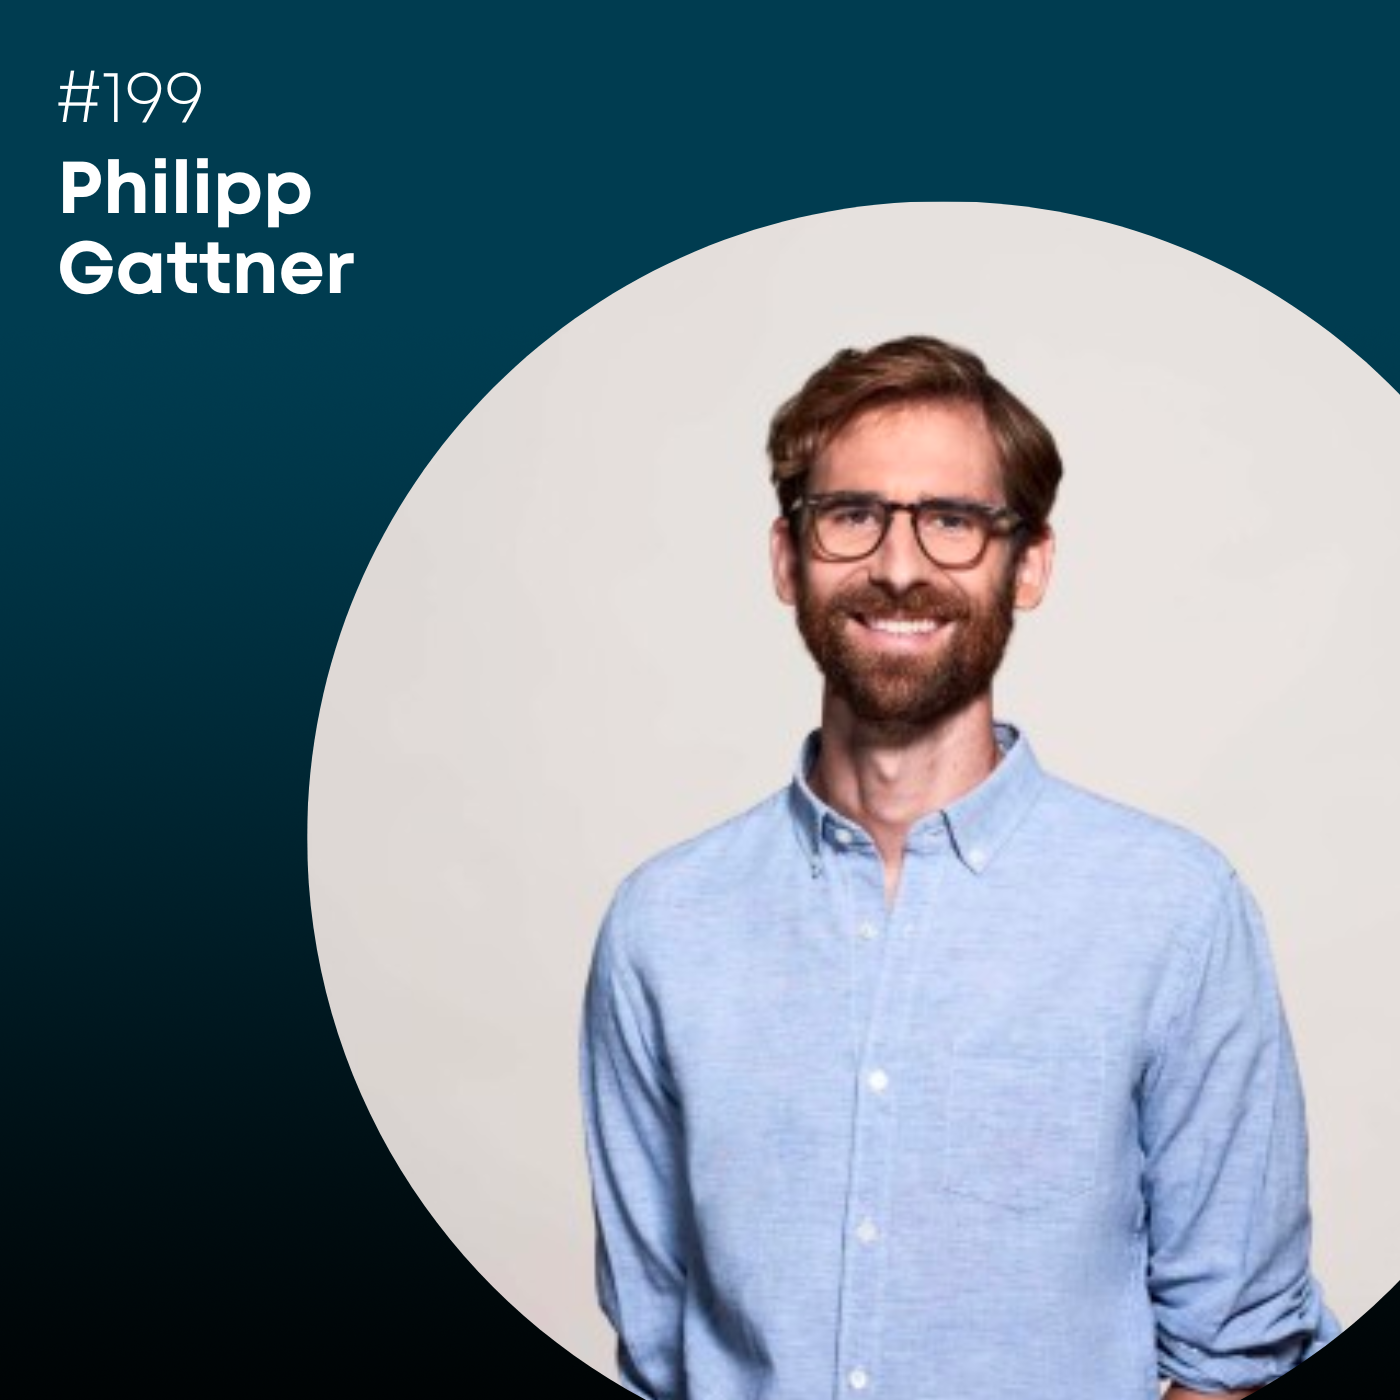 Folge 199: Philipp Gattner, wie funktioniert die Circular Economy?